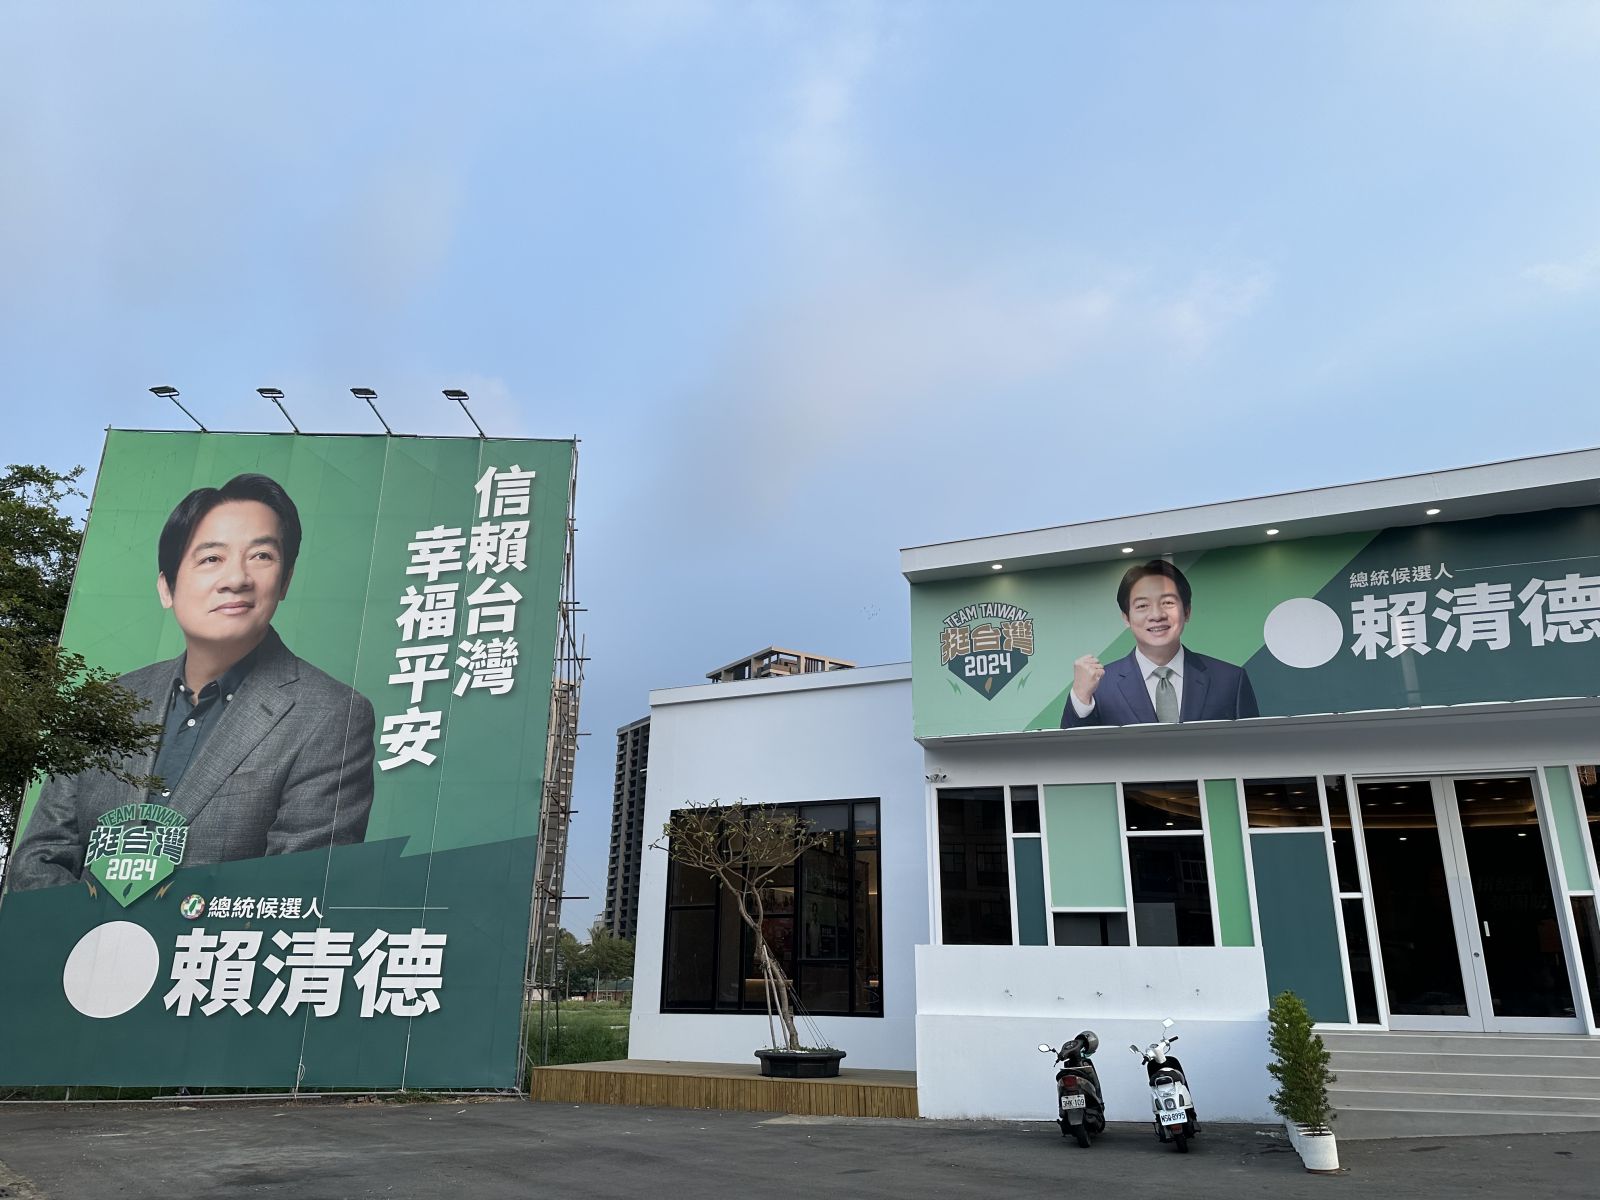 賴清德台南市競選總部被人檢舉是樣品屋，依法不得作為他用。辛啓松攝